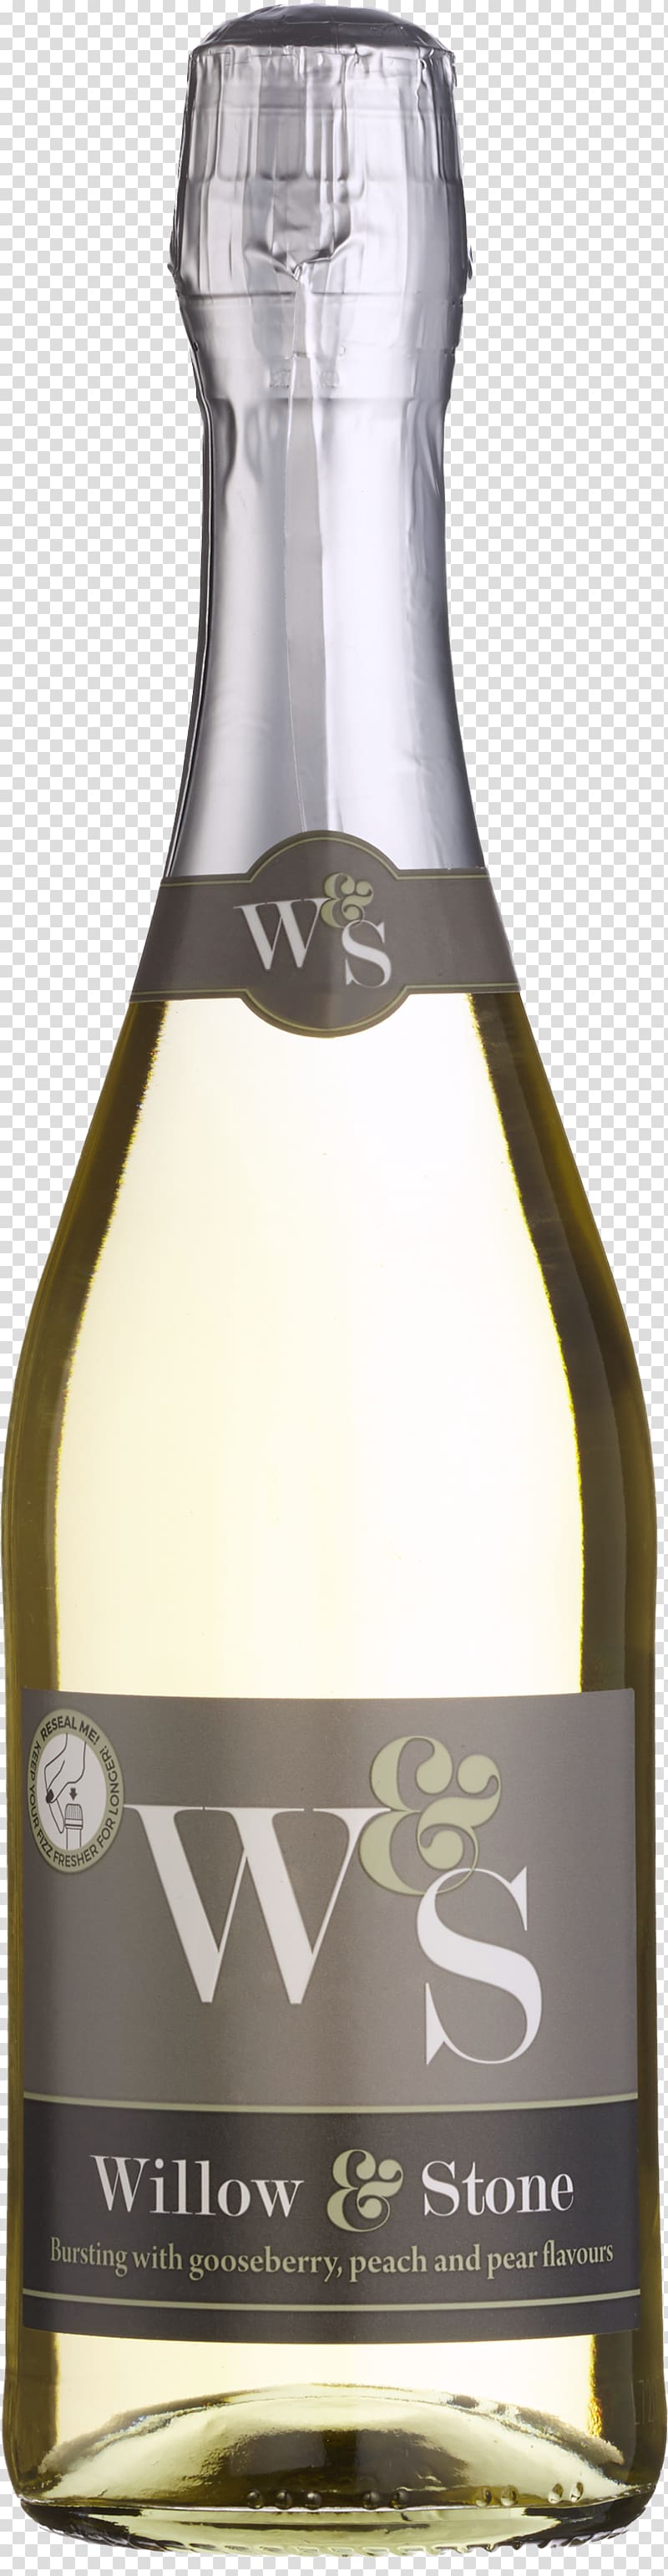 Liqueur Glass bottle Sparkling wine, wine tasting flyer transparent background PNG clipart